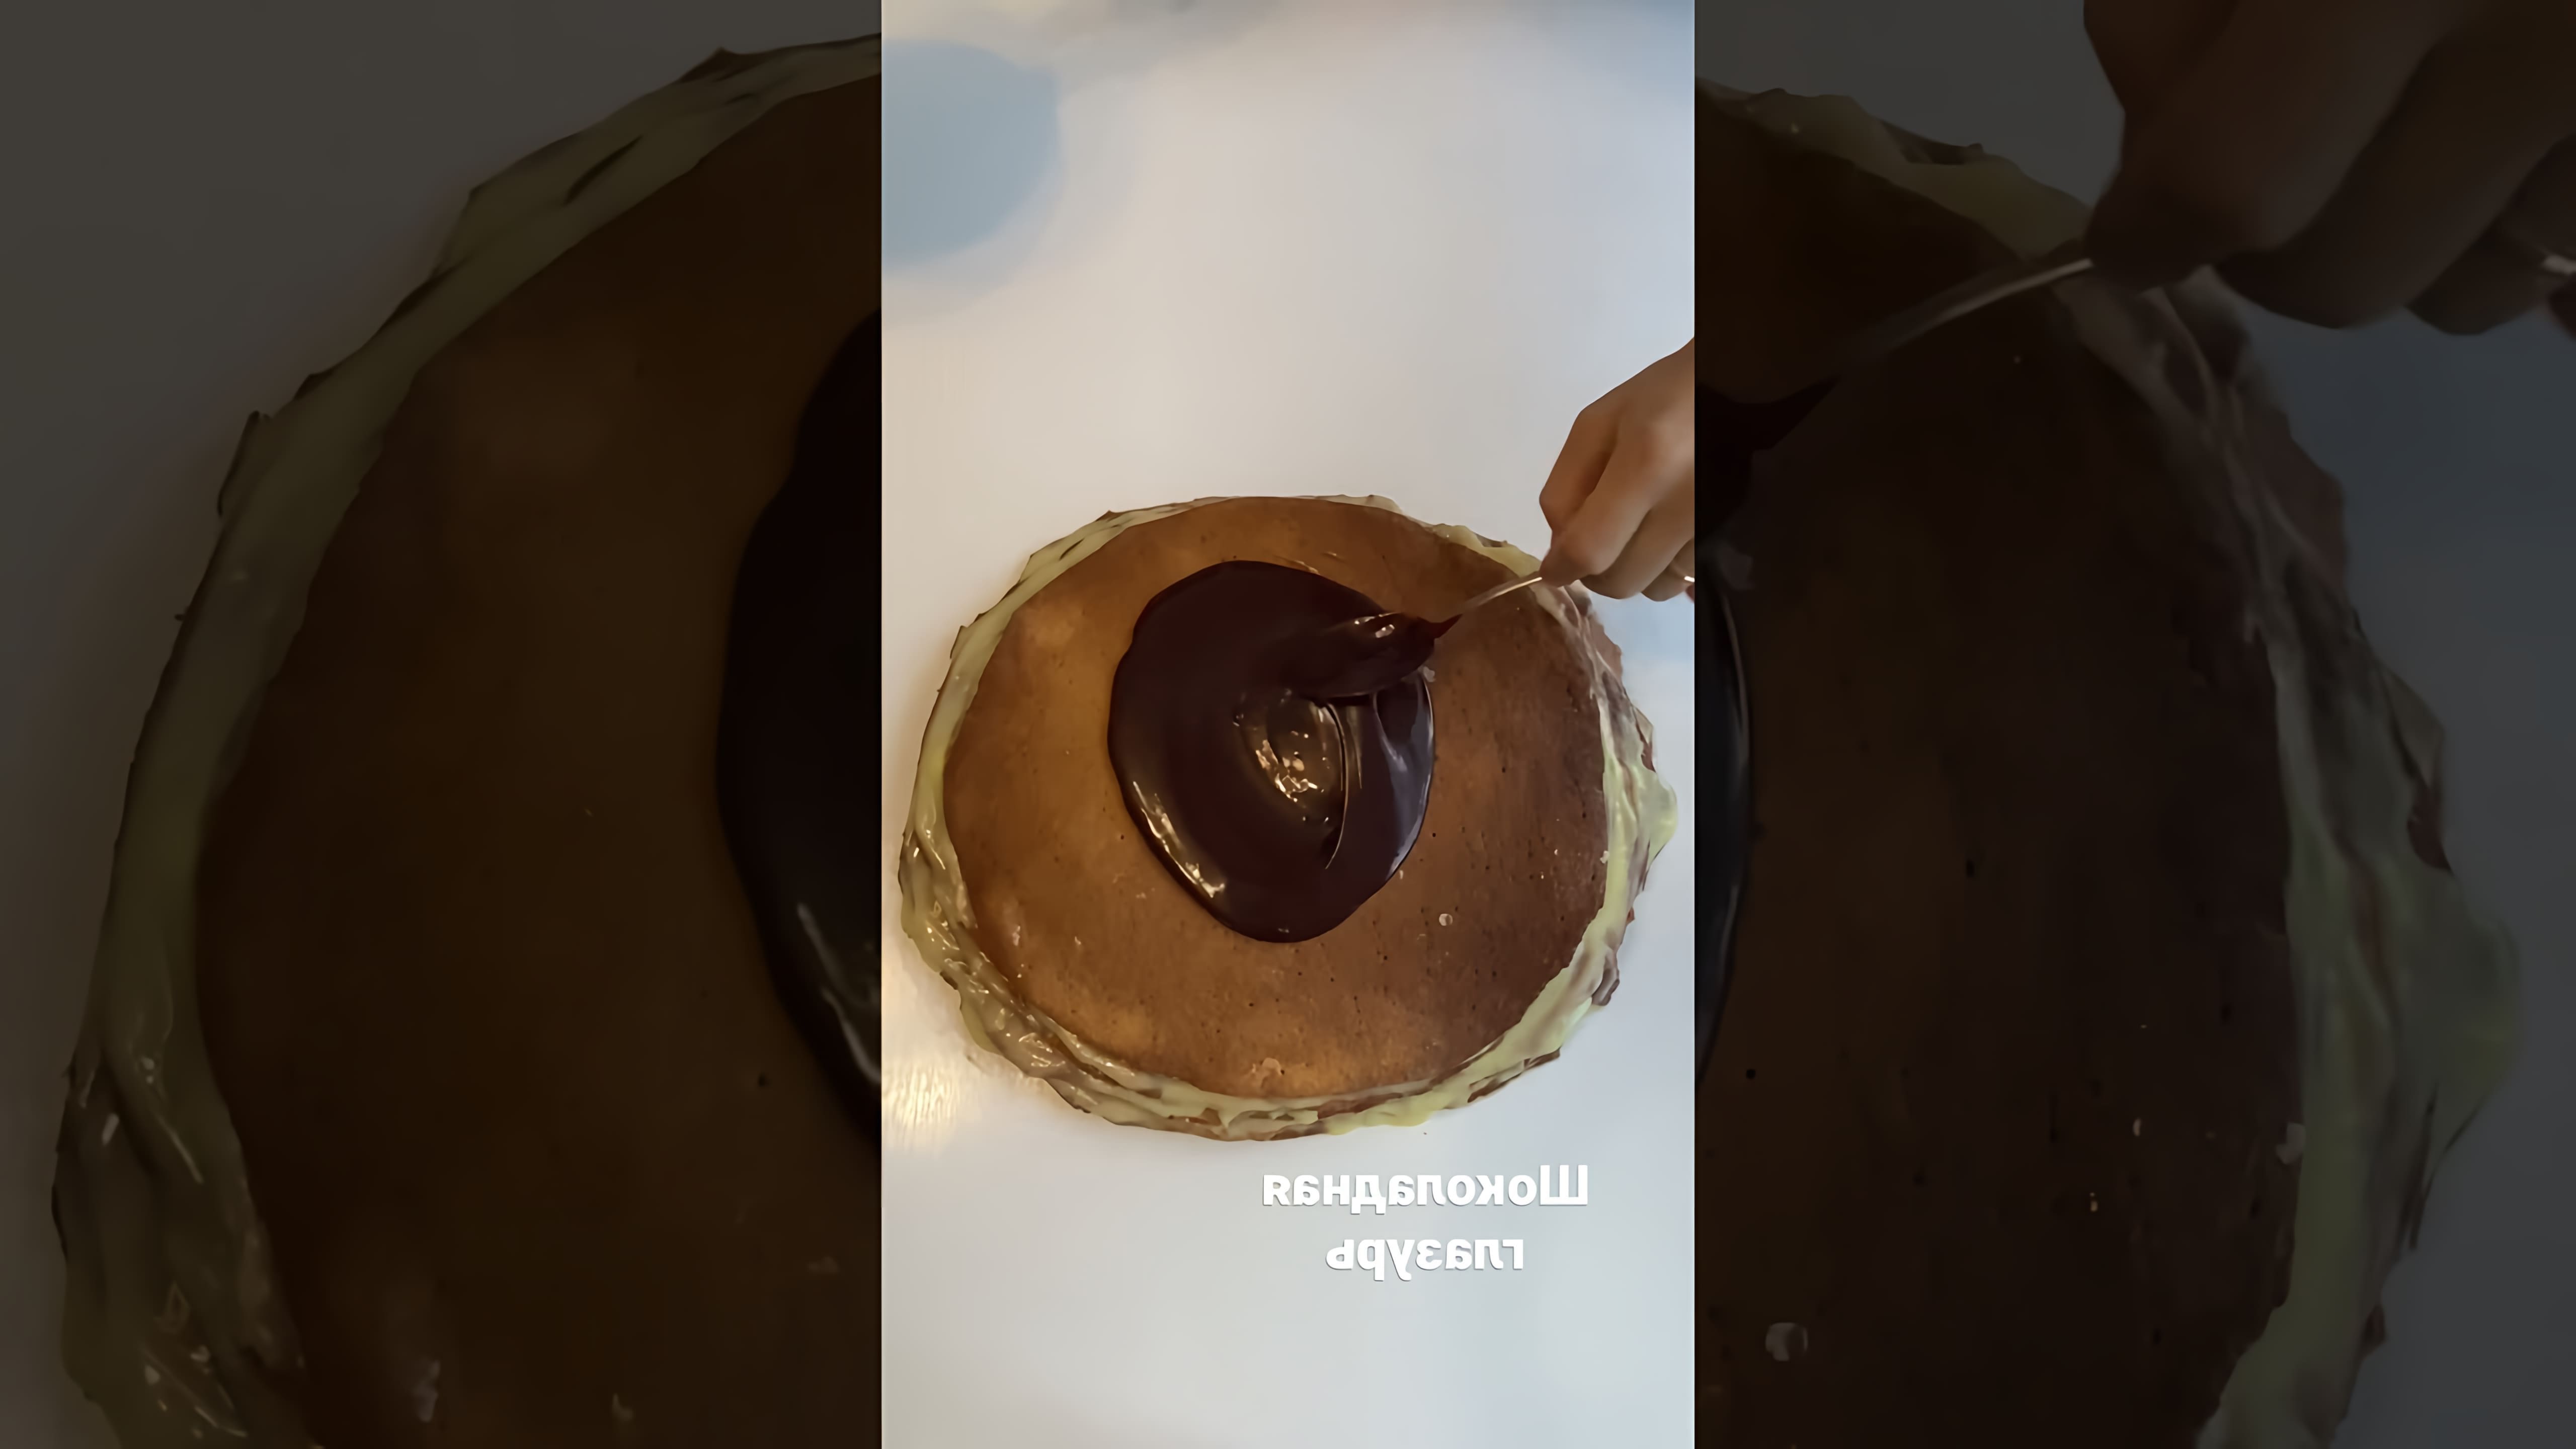 Видео посвящено приготовлению шоколадной глазури или глазури для торта